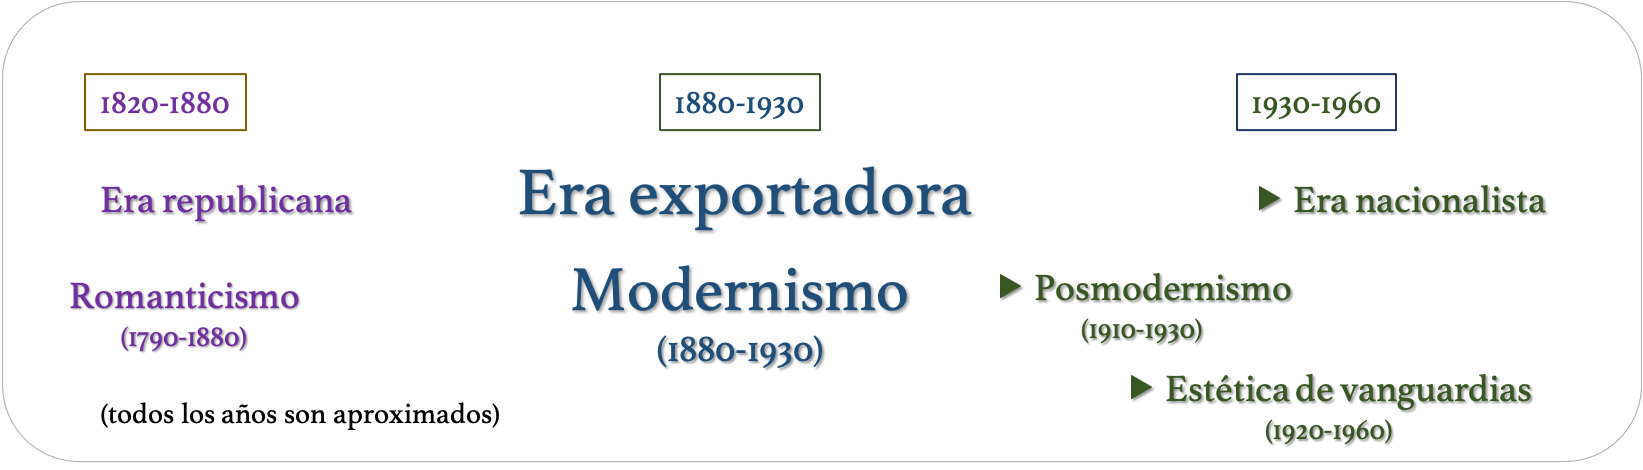 Modernismo hispanoamericano